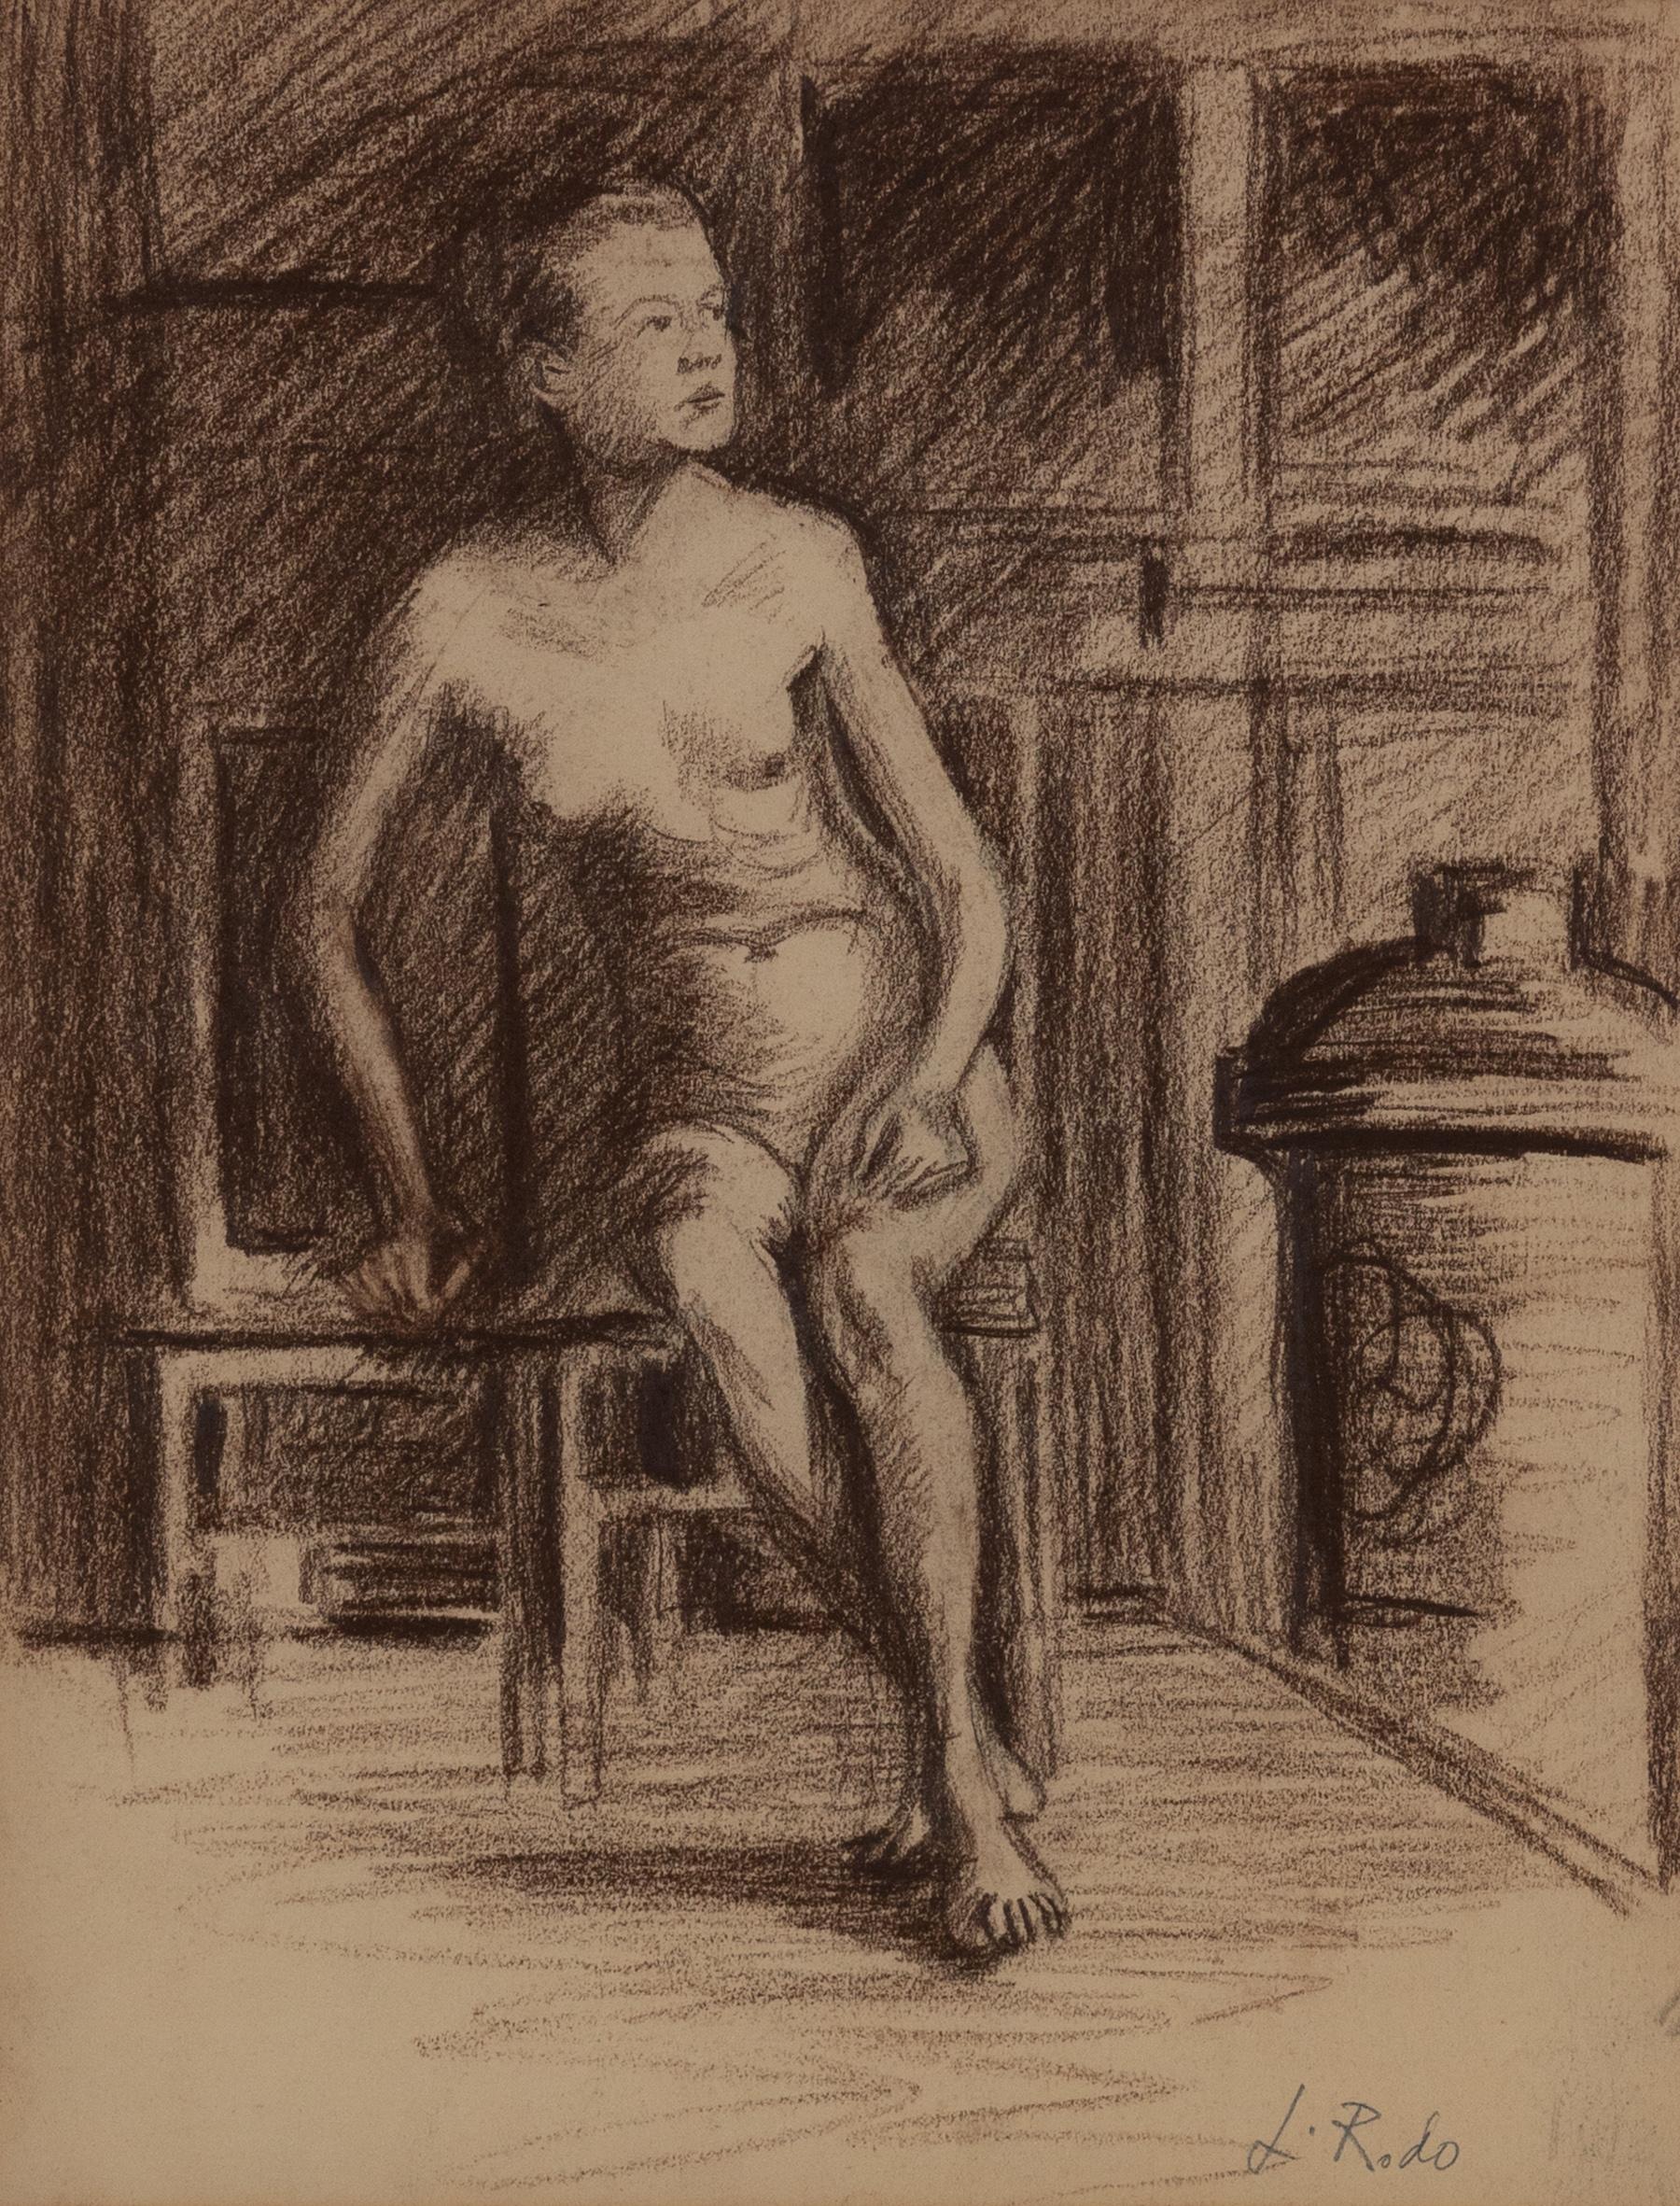 Nu Assise von Ludovic-Rodo Pissarro (1878-1952)
Zeichenkohle auf Papier
31,3 x 24,2 cm (12 ⅜ x 9 ½ Zoll)
Signiert unten rechts, L.Rodo

Dieses Kunstwerk wird von einem Echtheitszertifikat begleitet, das von Lélia Pissarro unterzeichnet und datiert